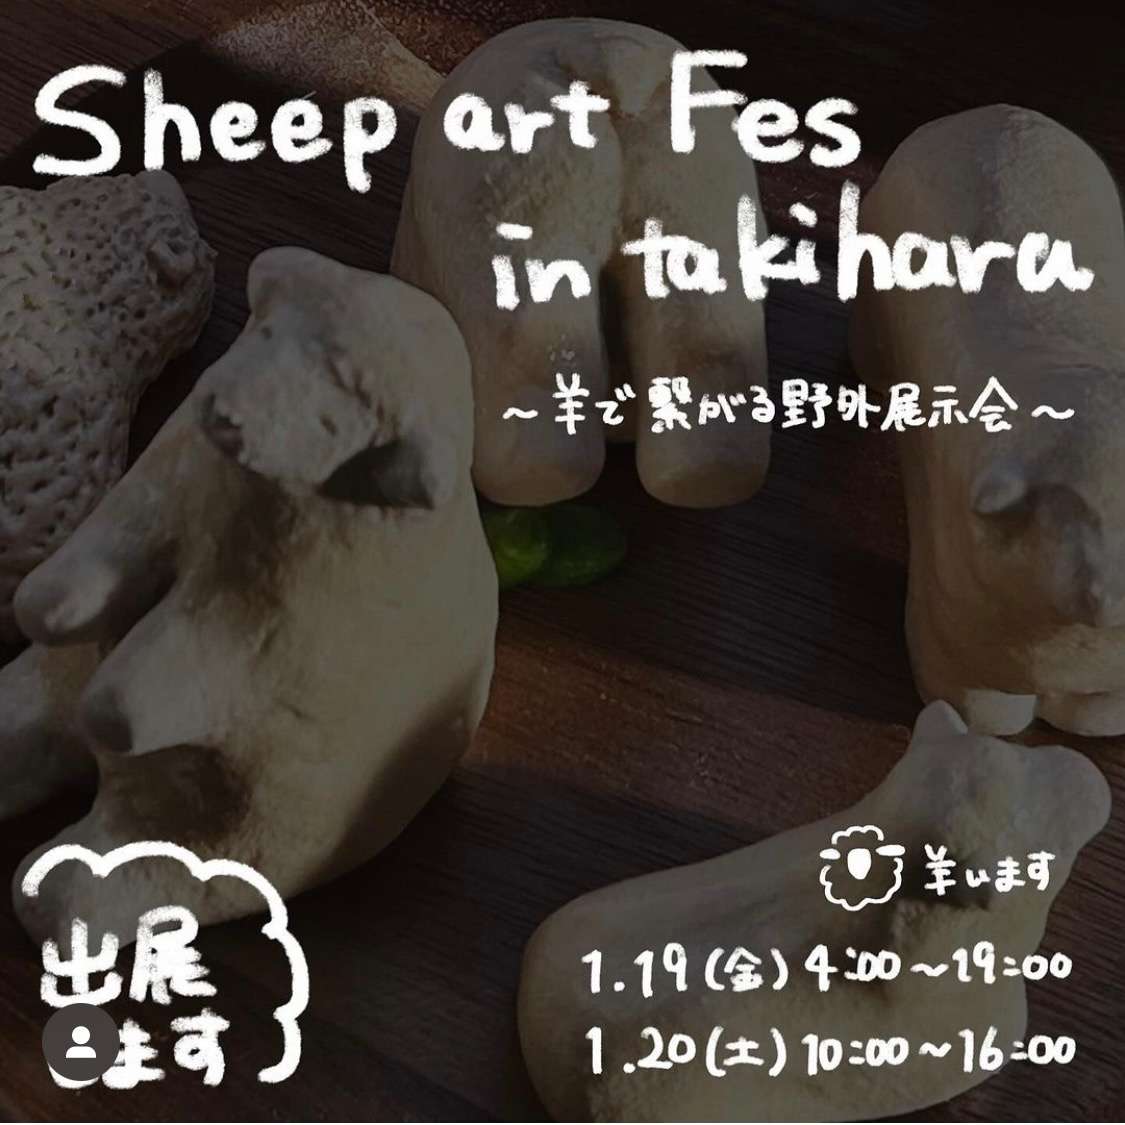 ボイストレーニング大阪～シャルル・ド・メリー、1月19日～20日開催の『Sheep art Fes in takihara』出展します！